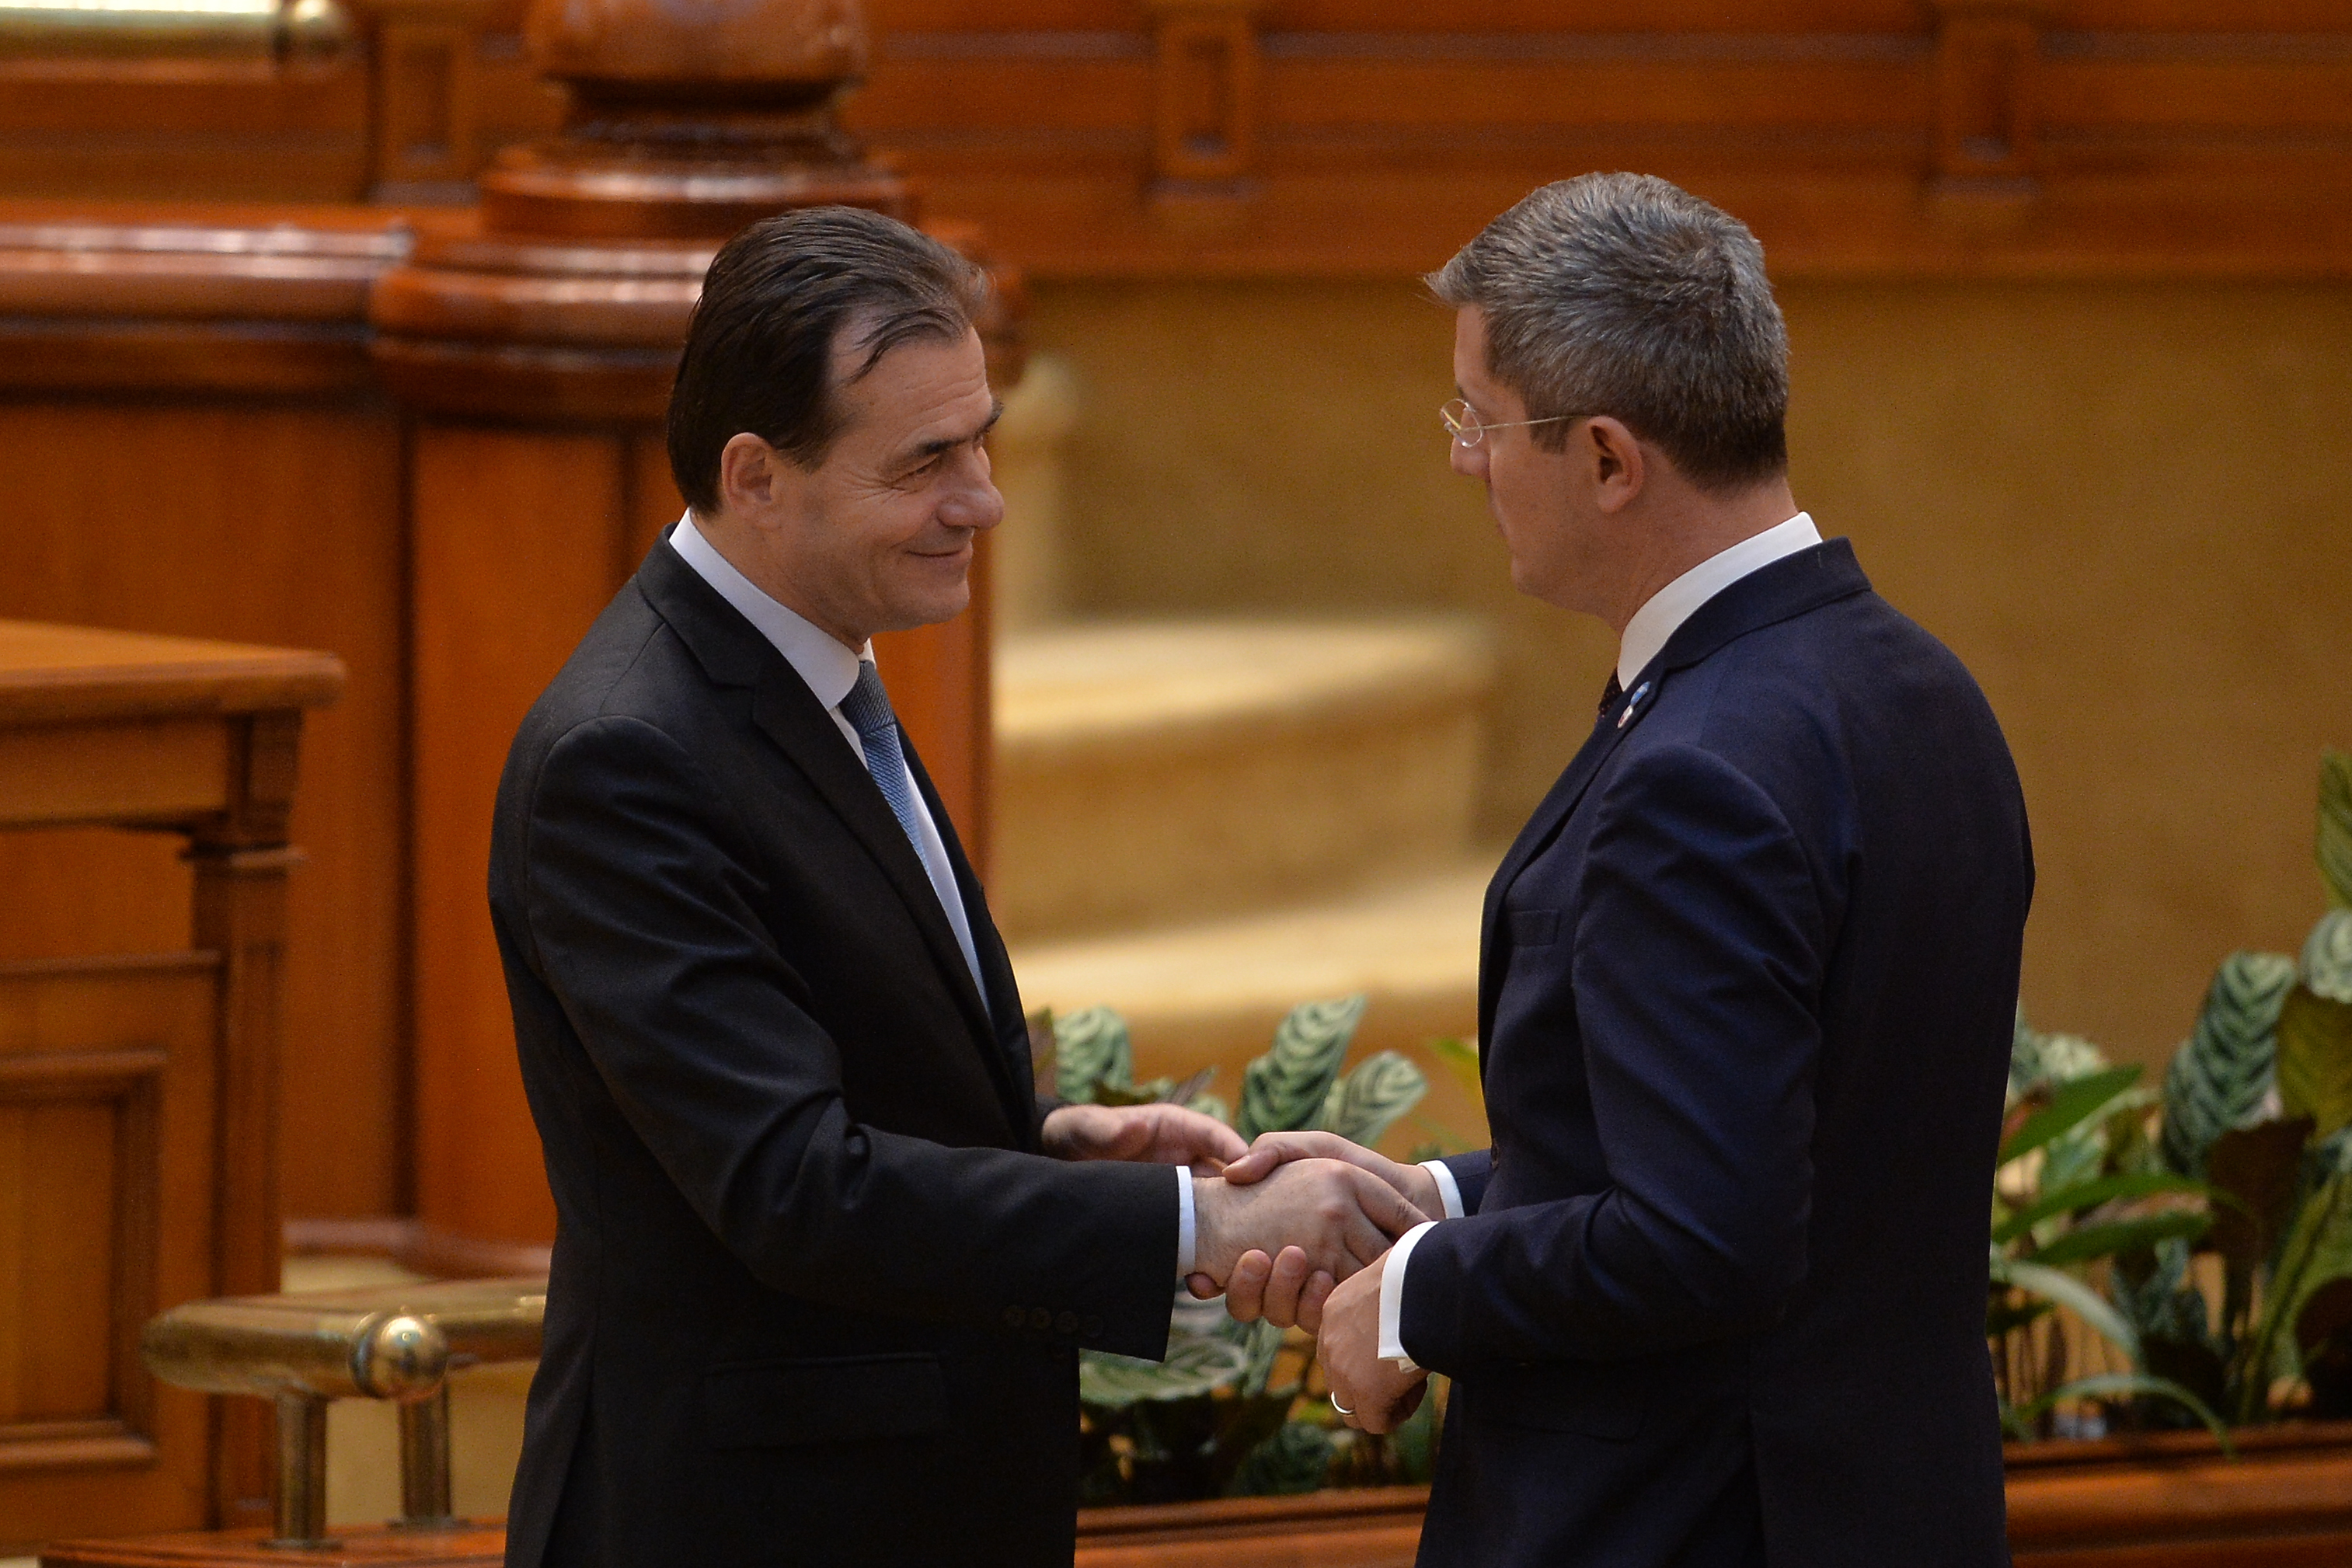 Barna: Voi discuta cu Orban săptămâna viitoare despre anticipate şi formarea majorităţii parlamentare